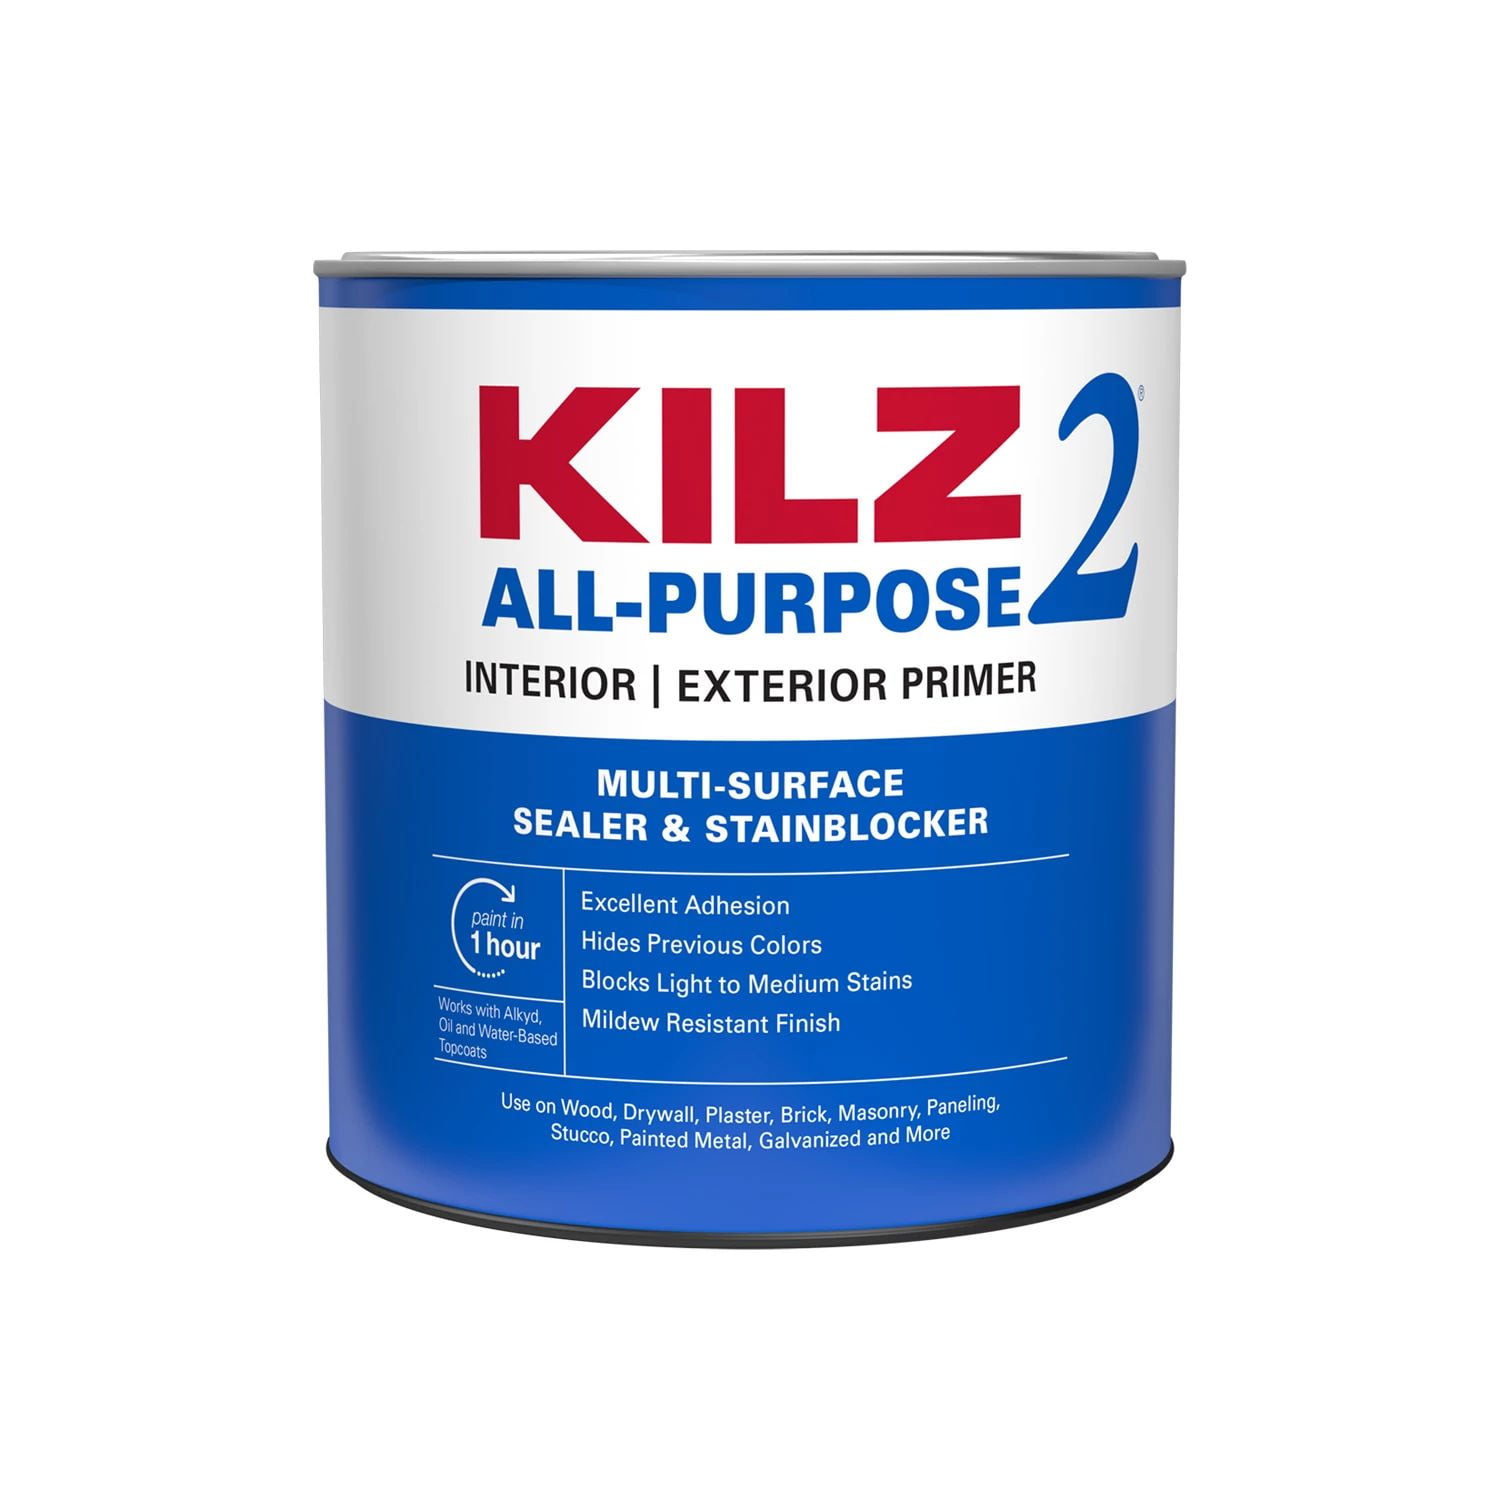 KILZ 2 All-Purpose Latex Primer, Interior/Exterior, 1 Quart